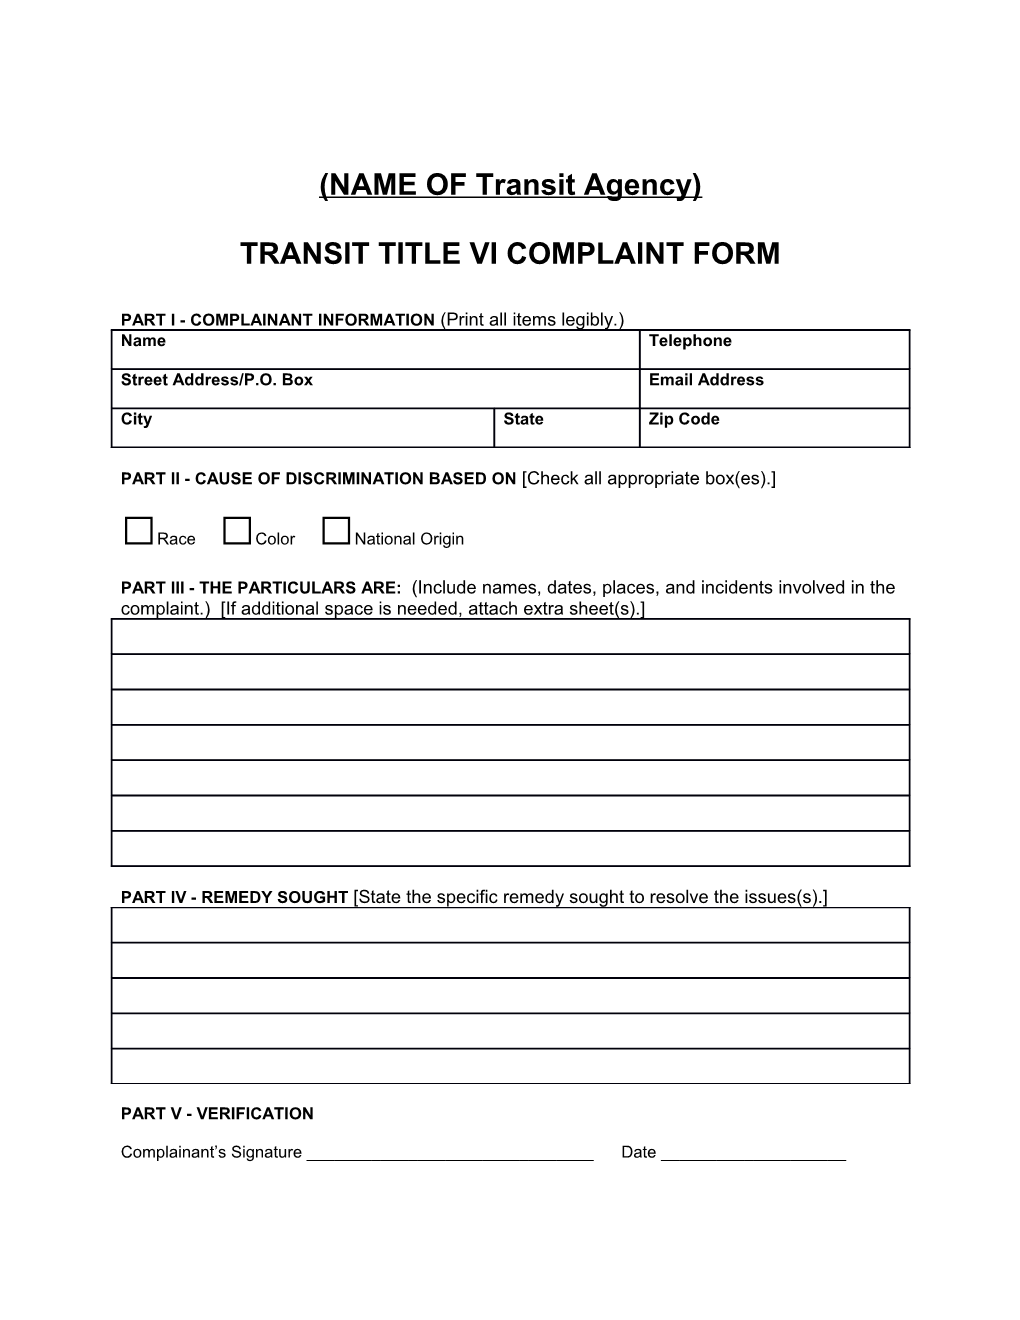 Transit Title Vi Complaint Form